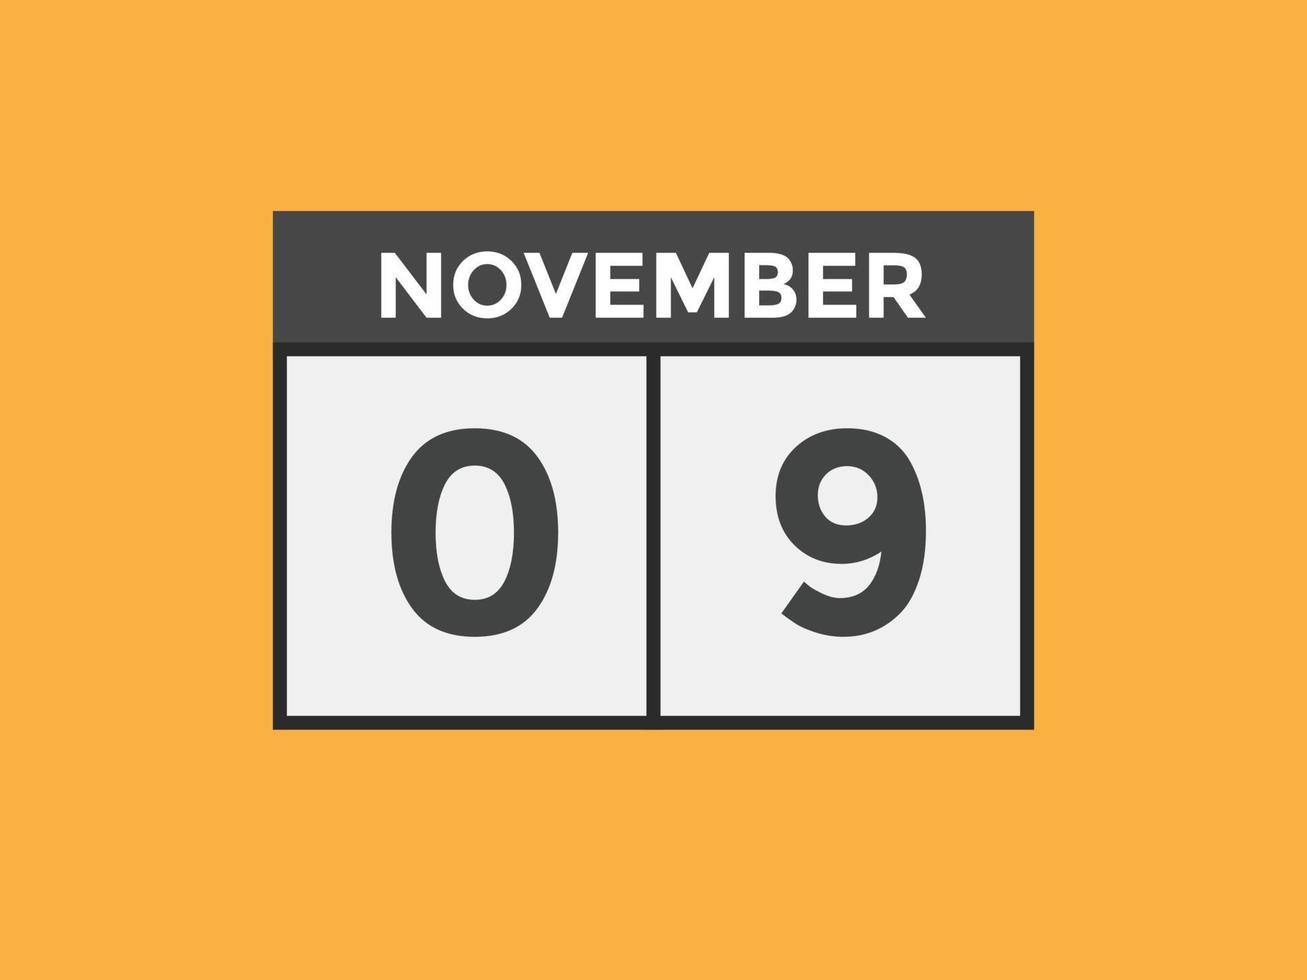 lembrete de calendário de 9 de novembro. 9 de novembro modelo de ícone de calendário diário. modelo de design de ícone de calendário 9 de novembro. ilustração vetorial vetor